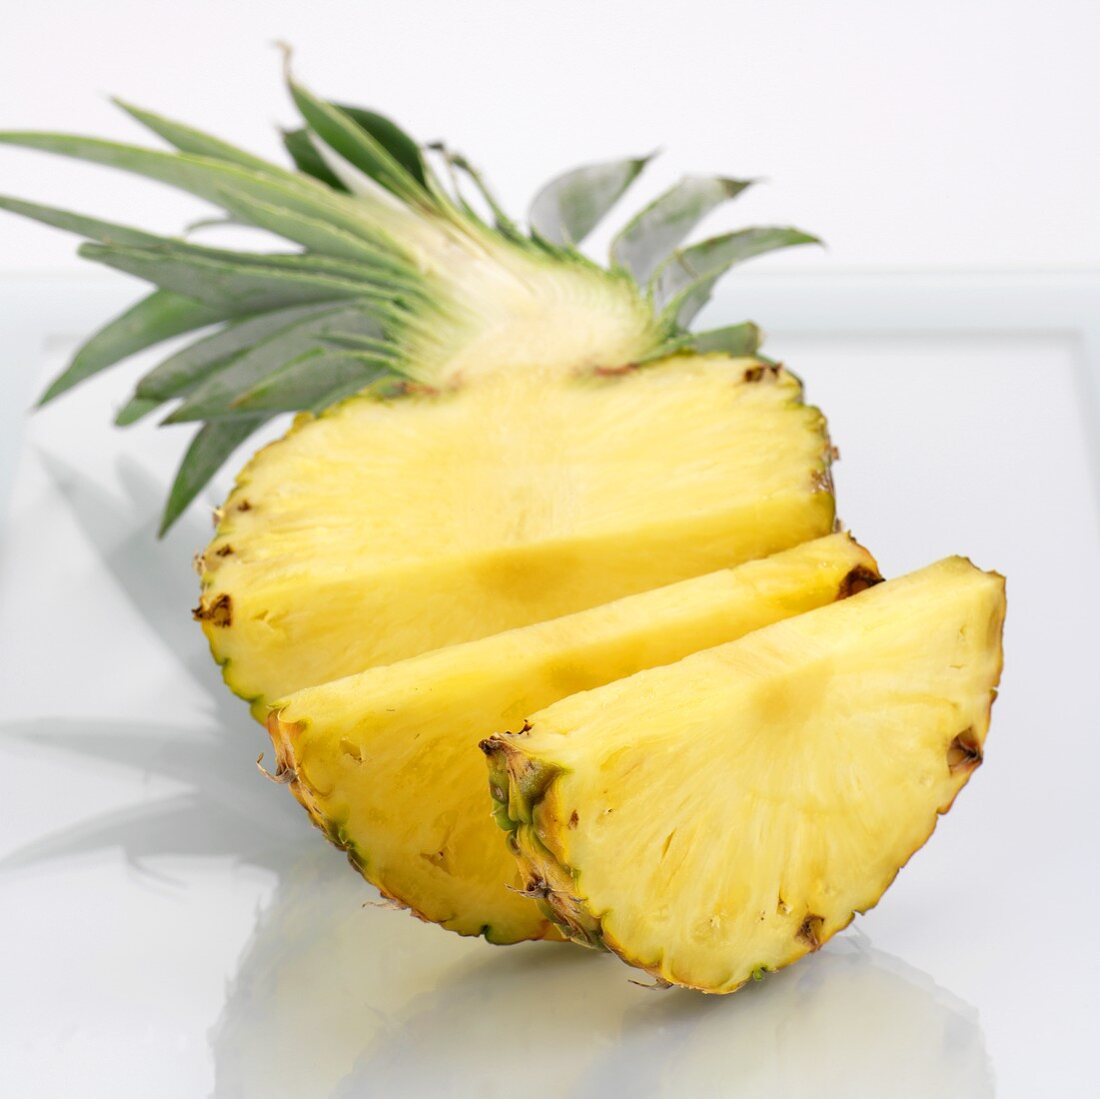 Halbe Ananas, teilweise in Scheiben geschnitten